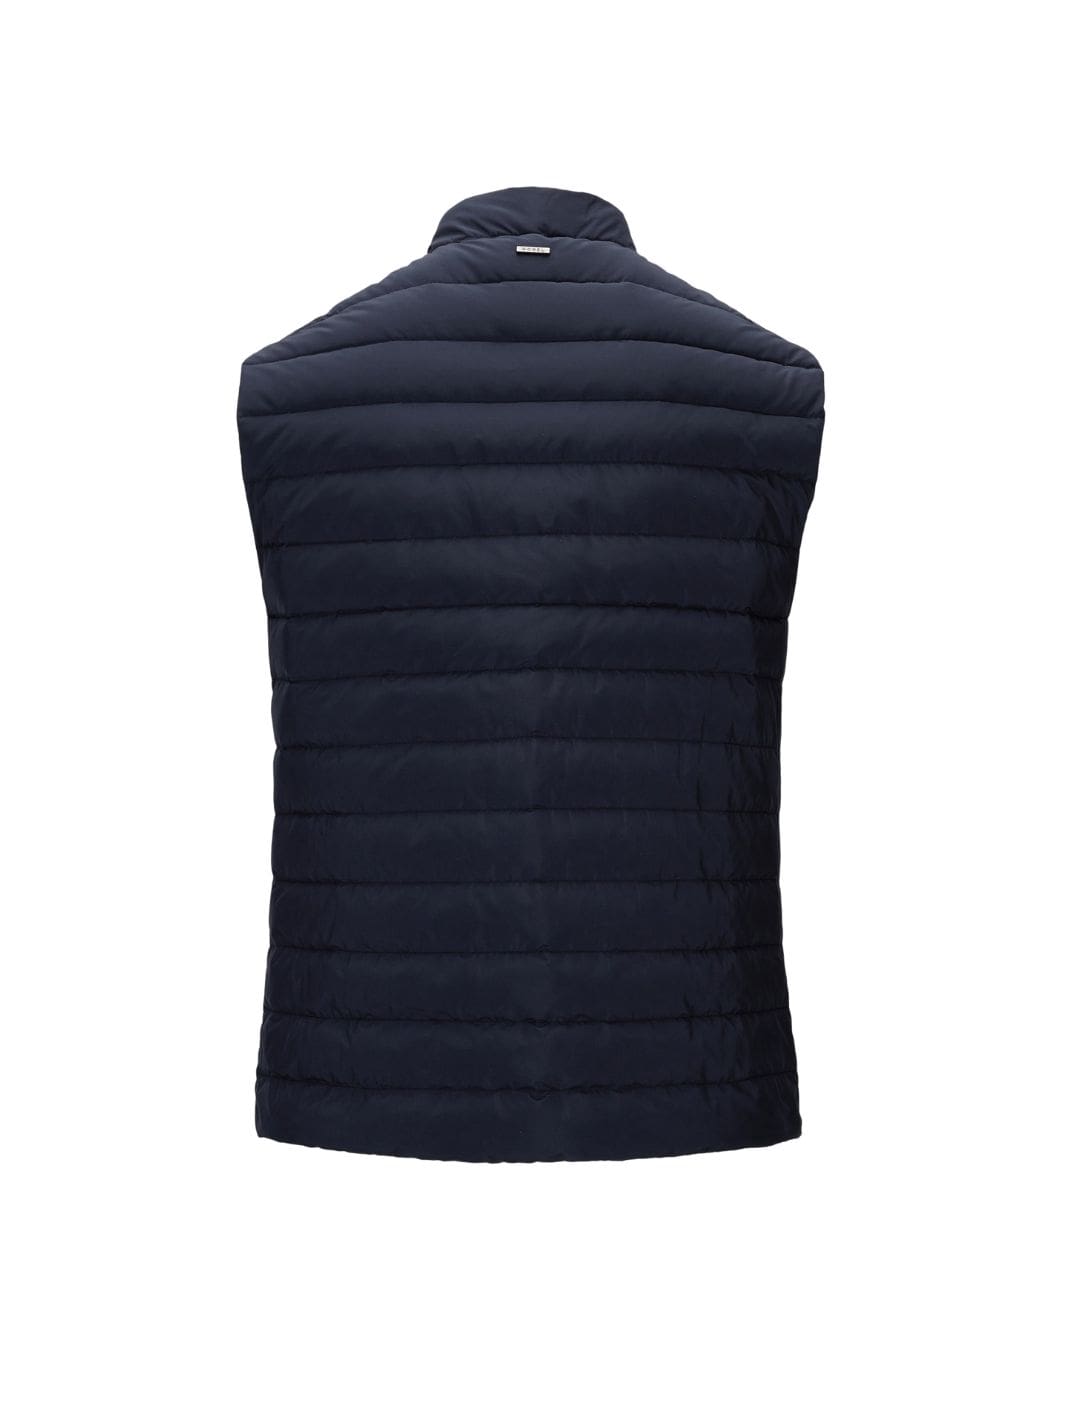 Monel Outerwear Vest | Marcus Vest Navy